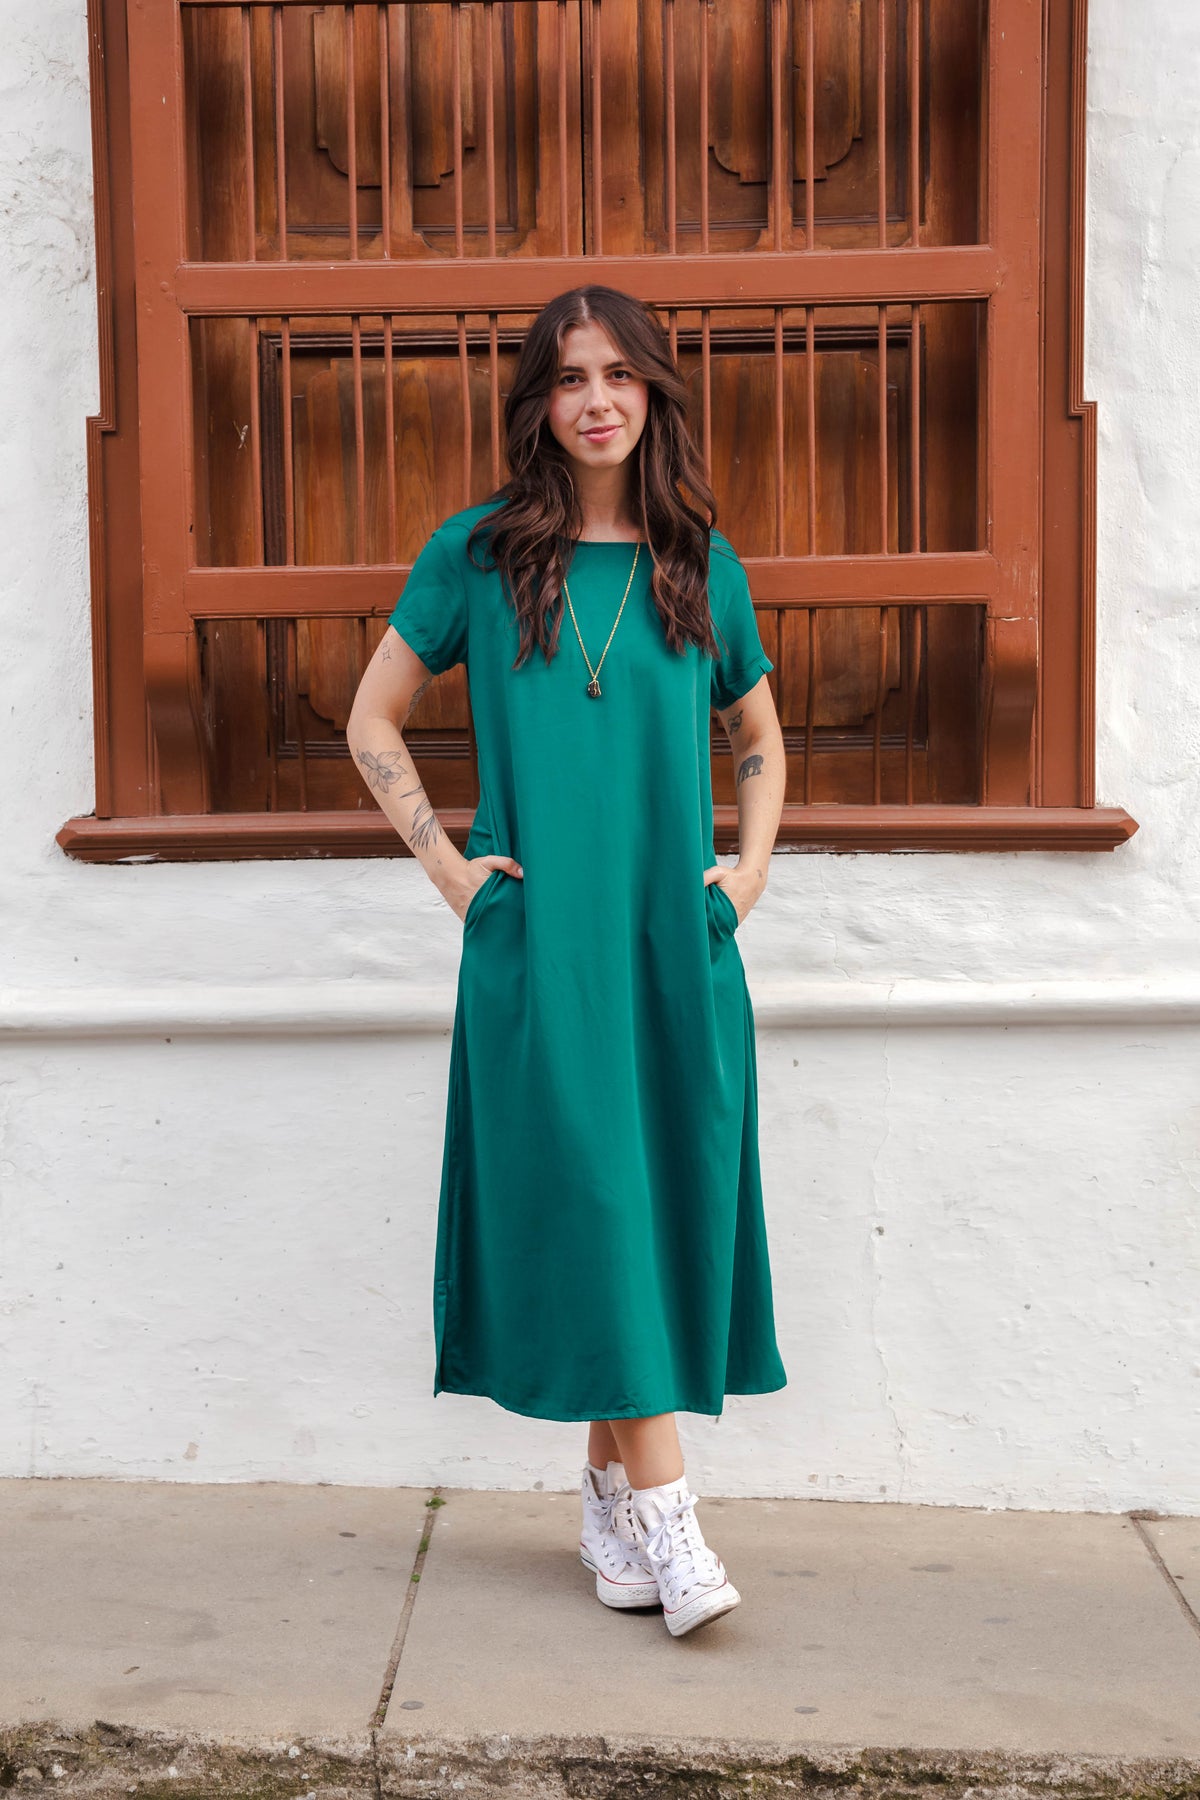 Vestido Alma Recto cuello en v o redondo  - Verde Esmeralda